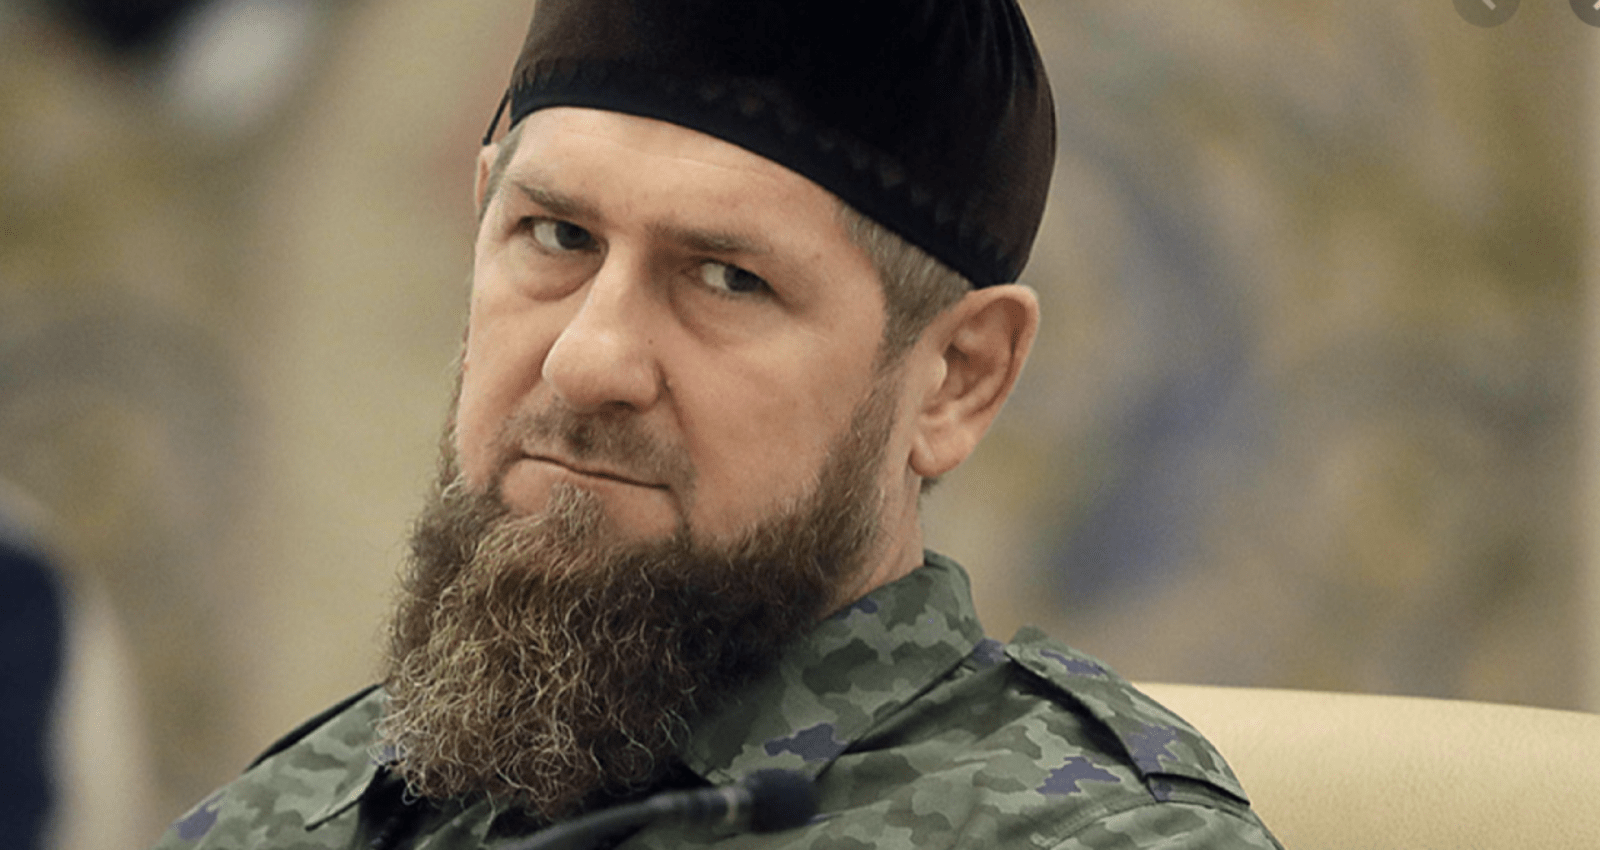 /VIDEO/ Kadîrov avertizează cu „o operațiune specială adevărată” în Ucraina